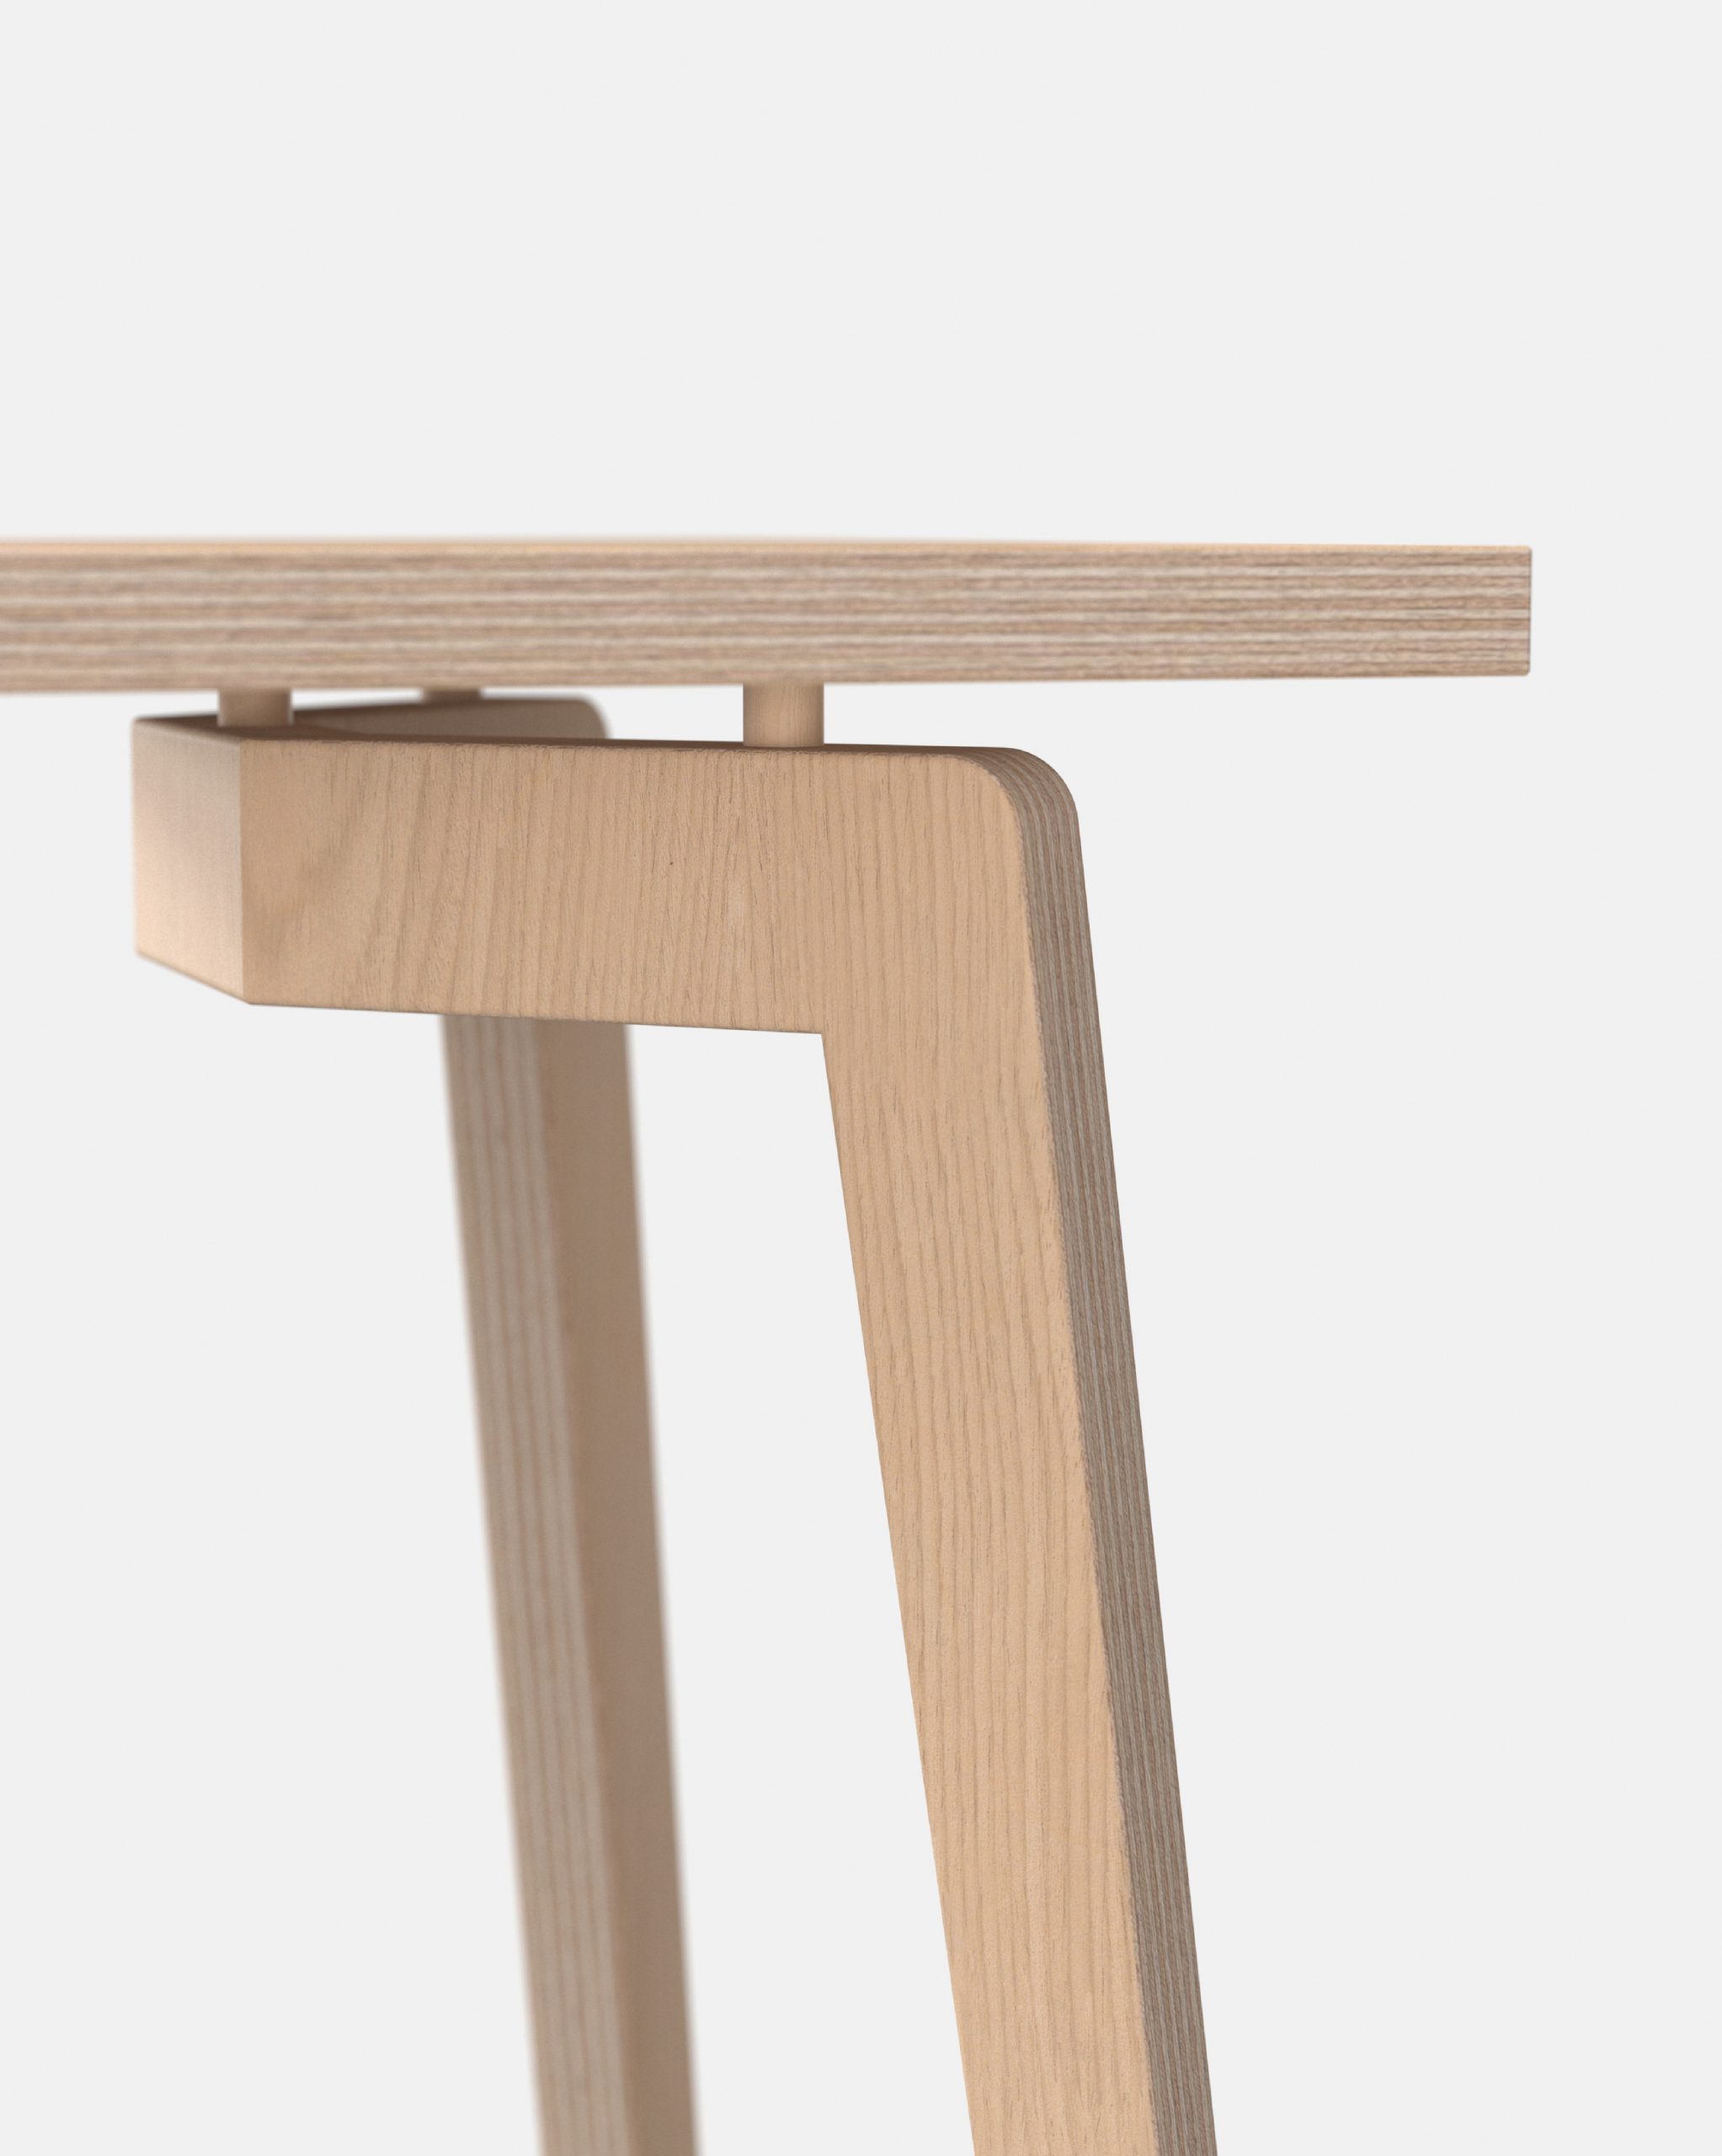 Détail table en bois naturel français, mobilier éco-conçu pour les professionnels